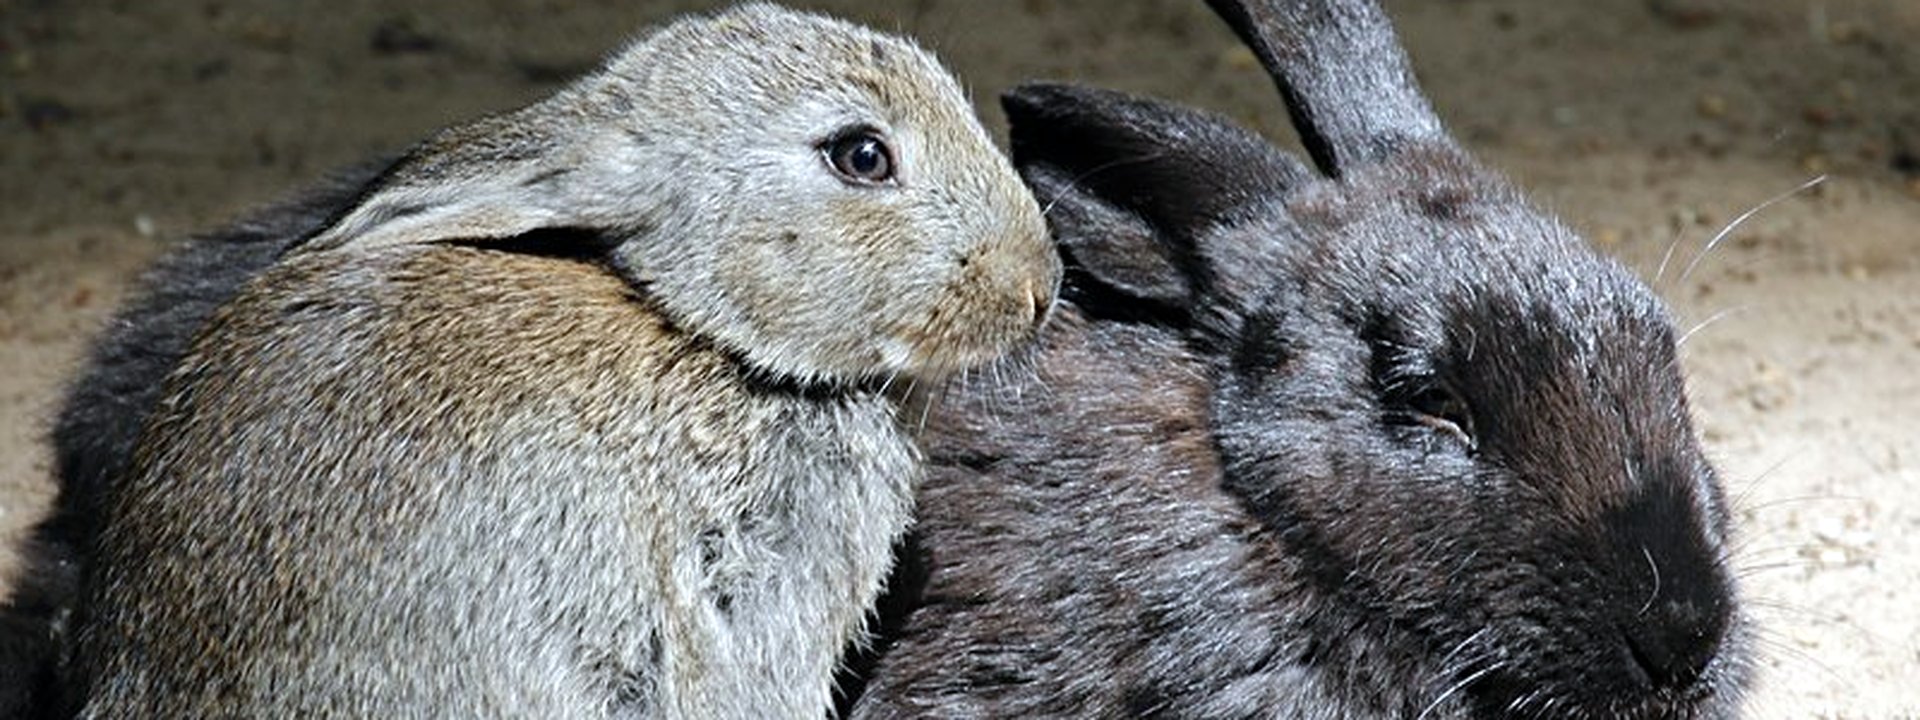 Zwei Kaninchen sitzen mit angelegten Ohren zusammen